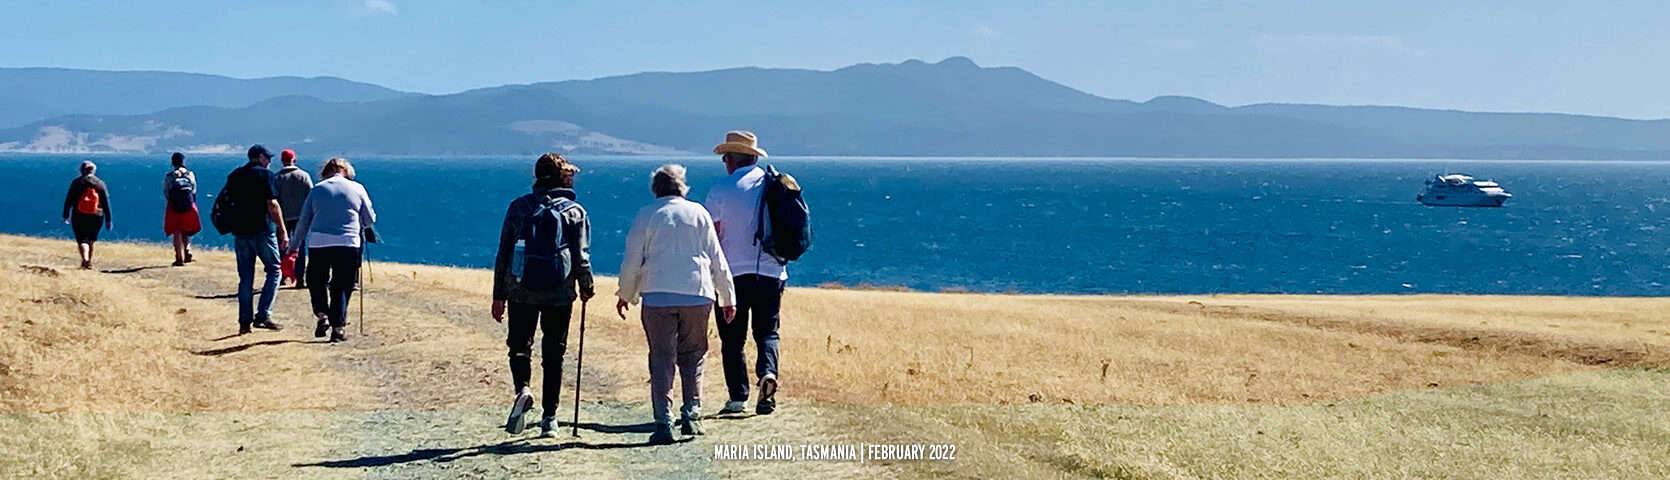 Maria Island, Tasmania - February 2022